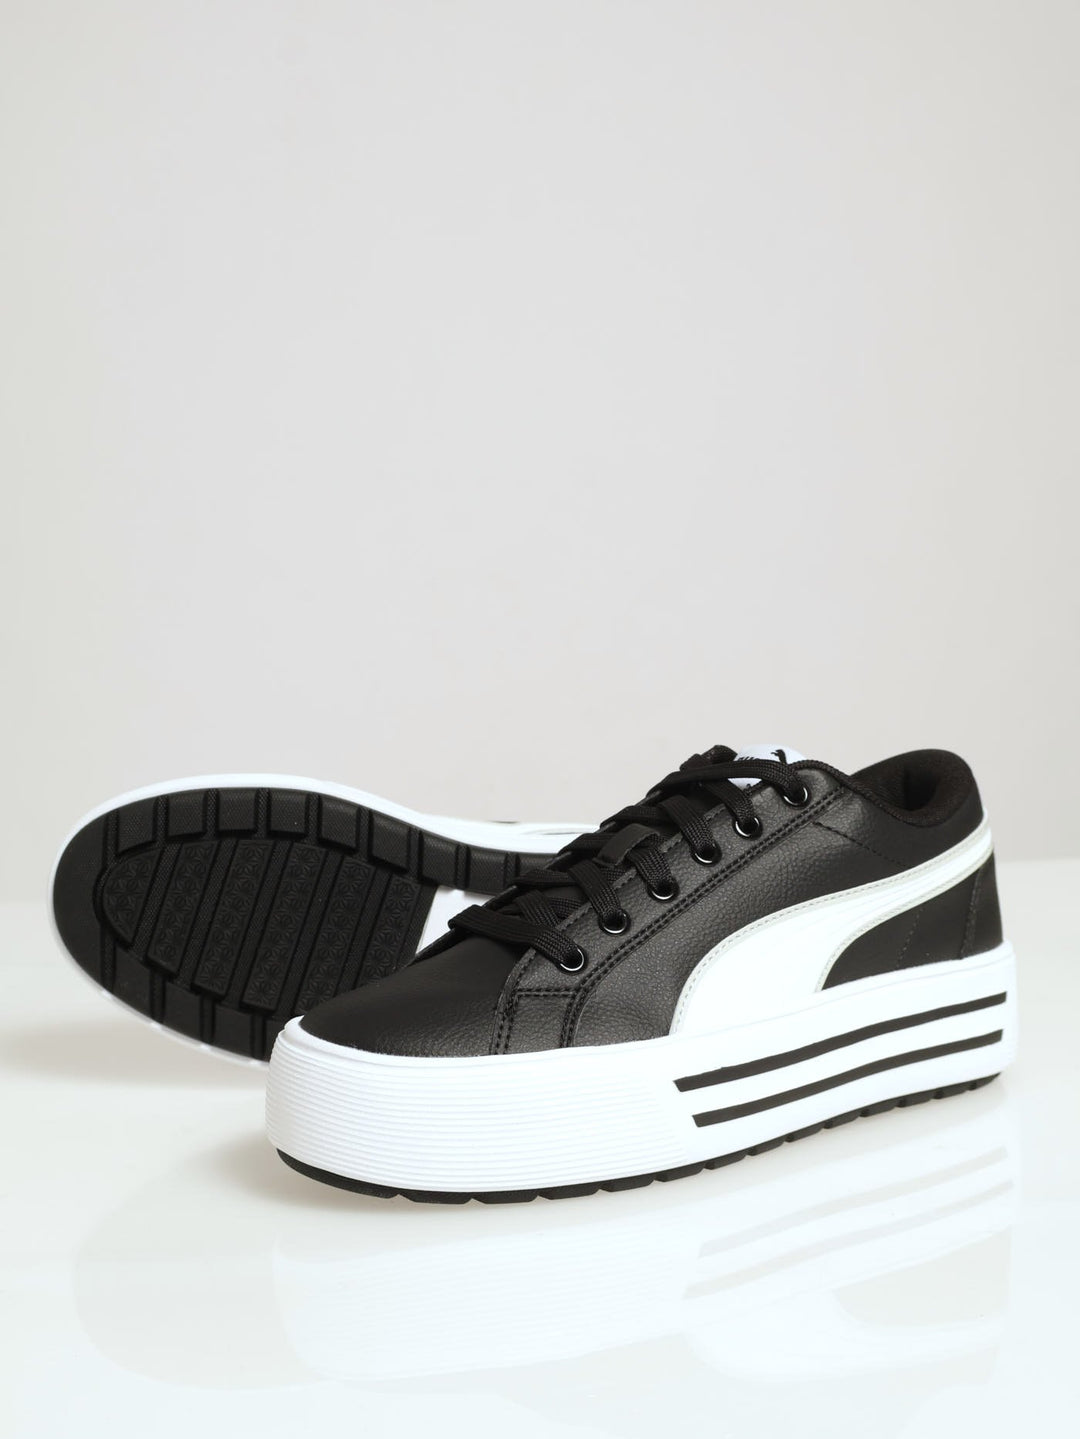 Kaia 2.0 Platform Sneaker - Black/White